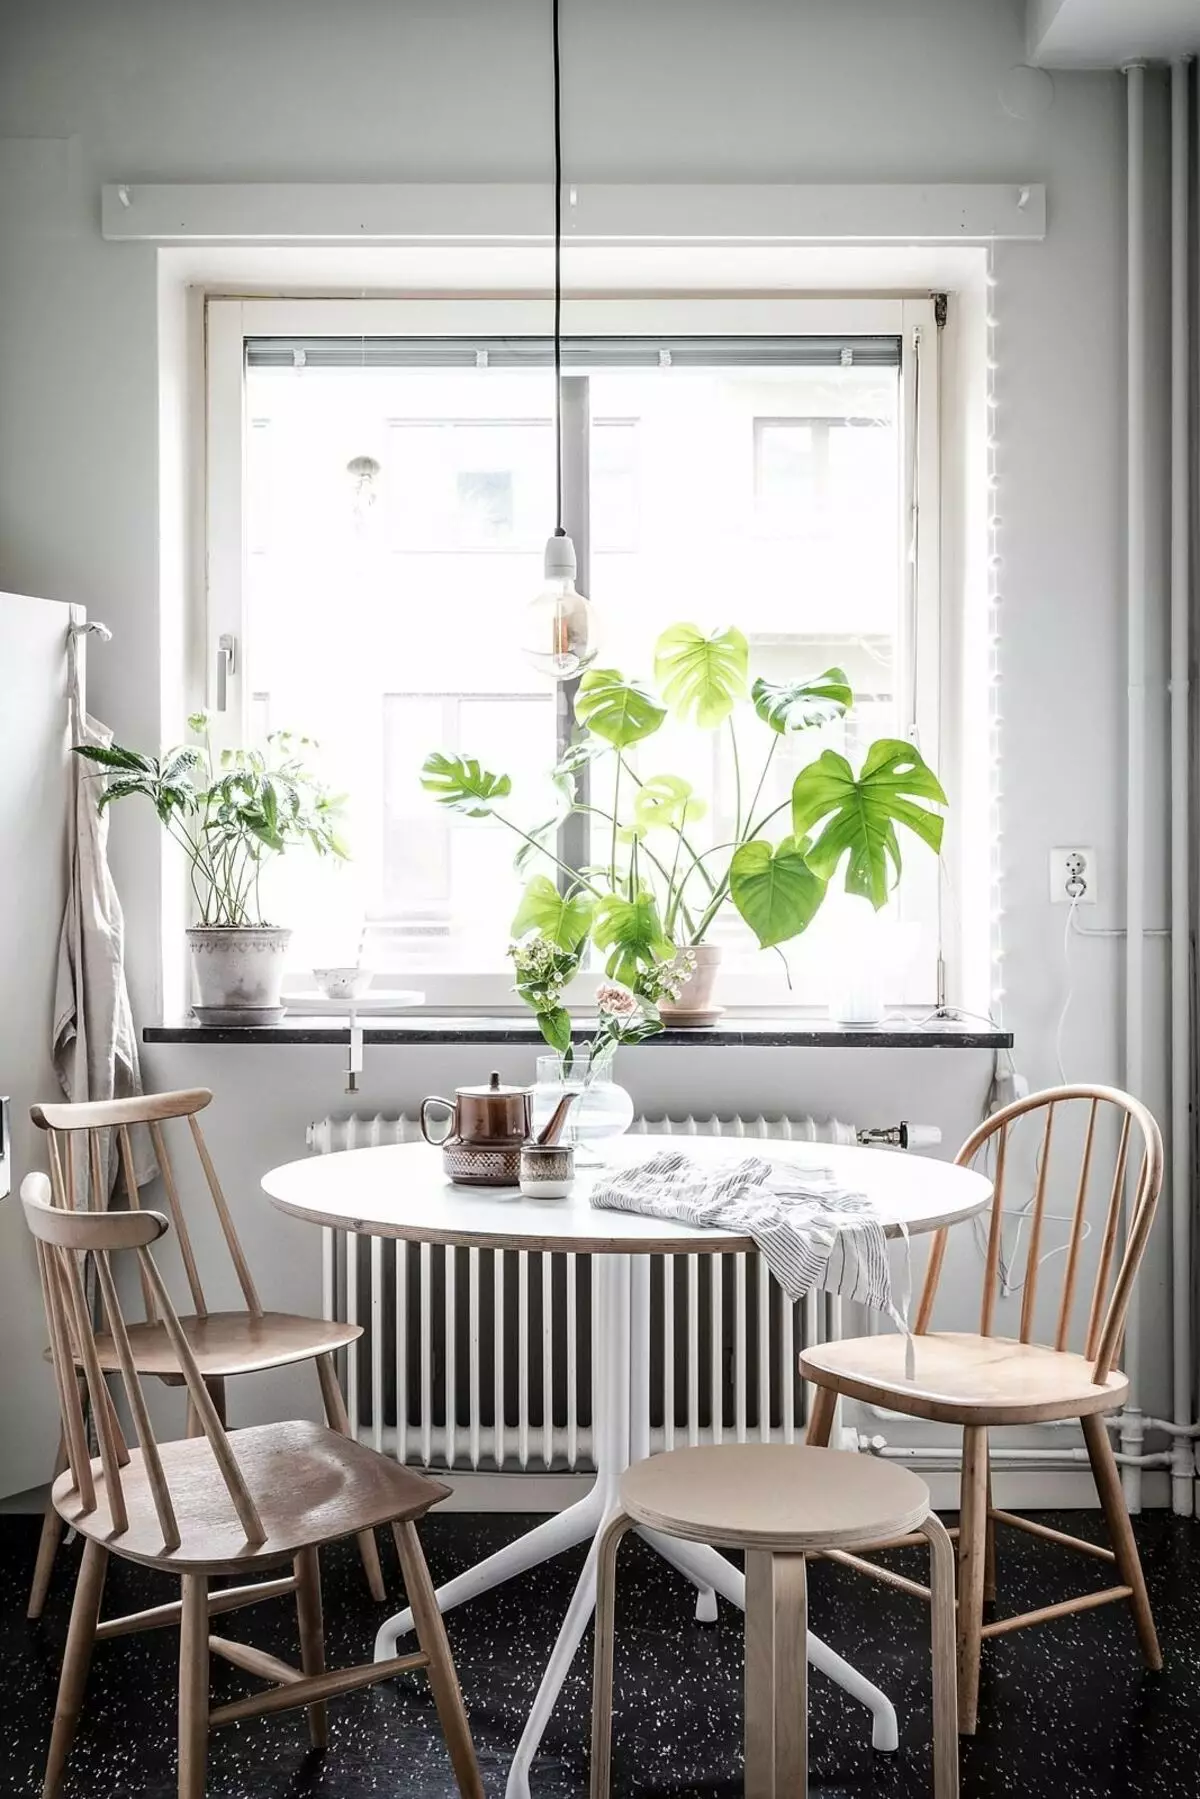 |免版稅照片在斯堪的納維亞風格用餐區用不同的椅子照片